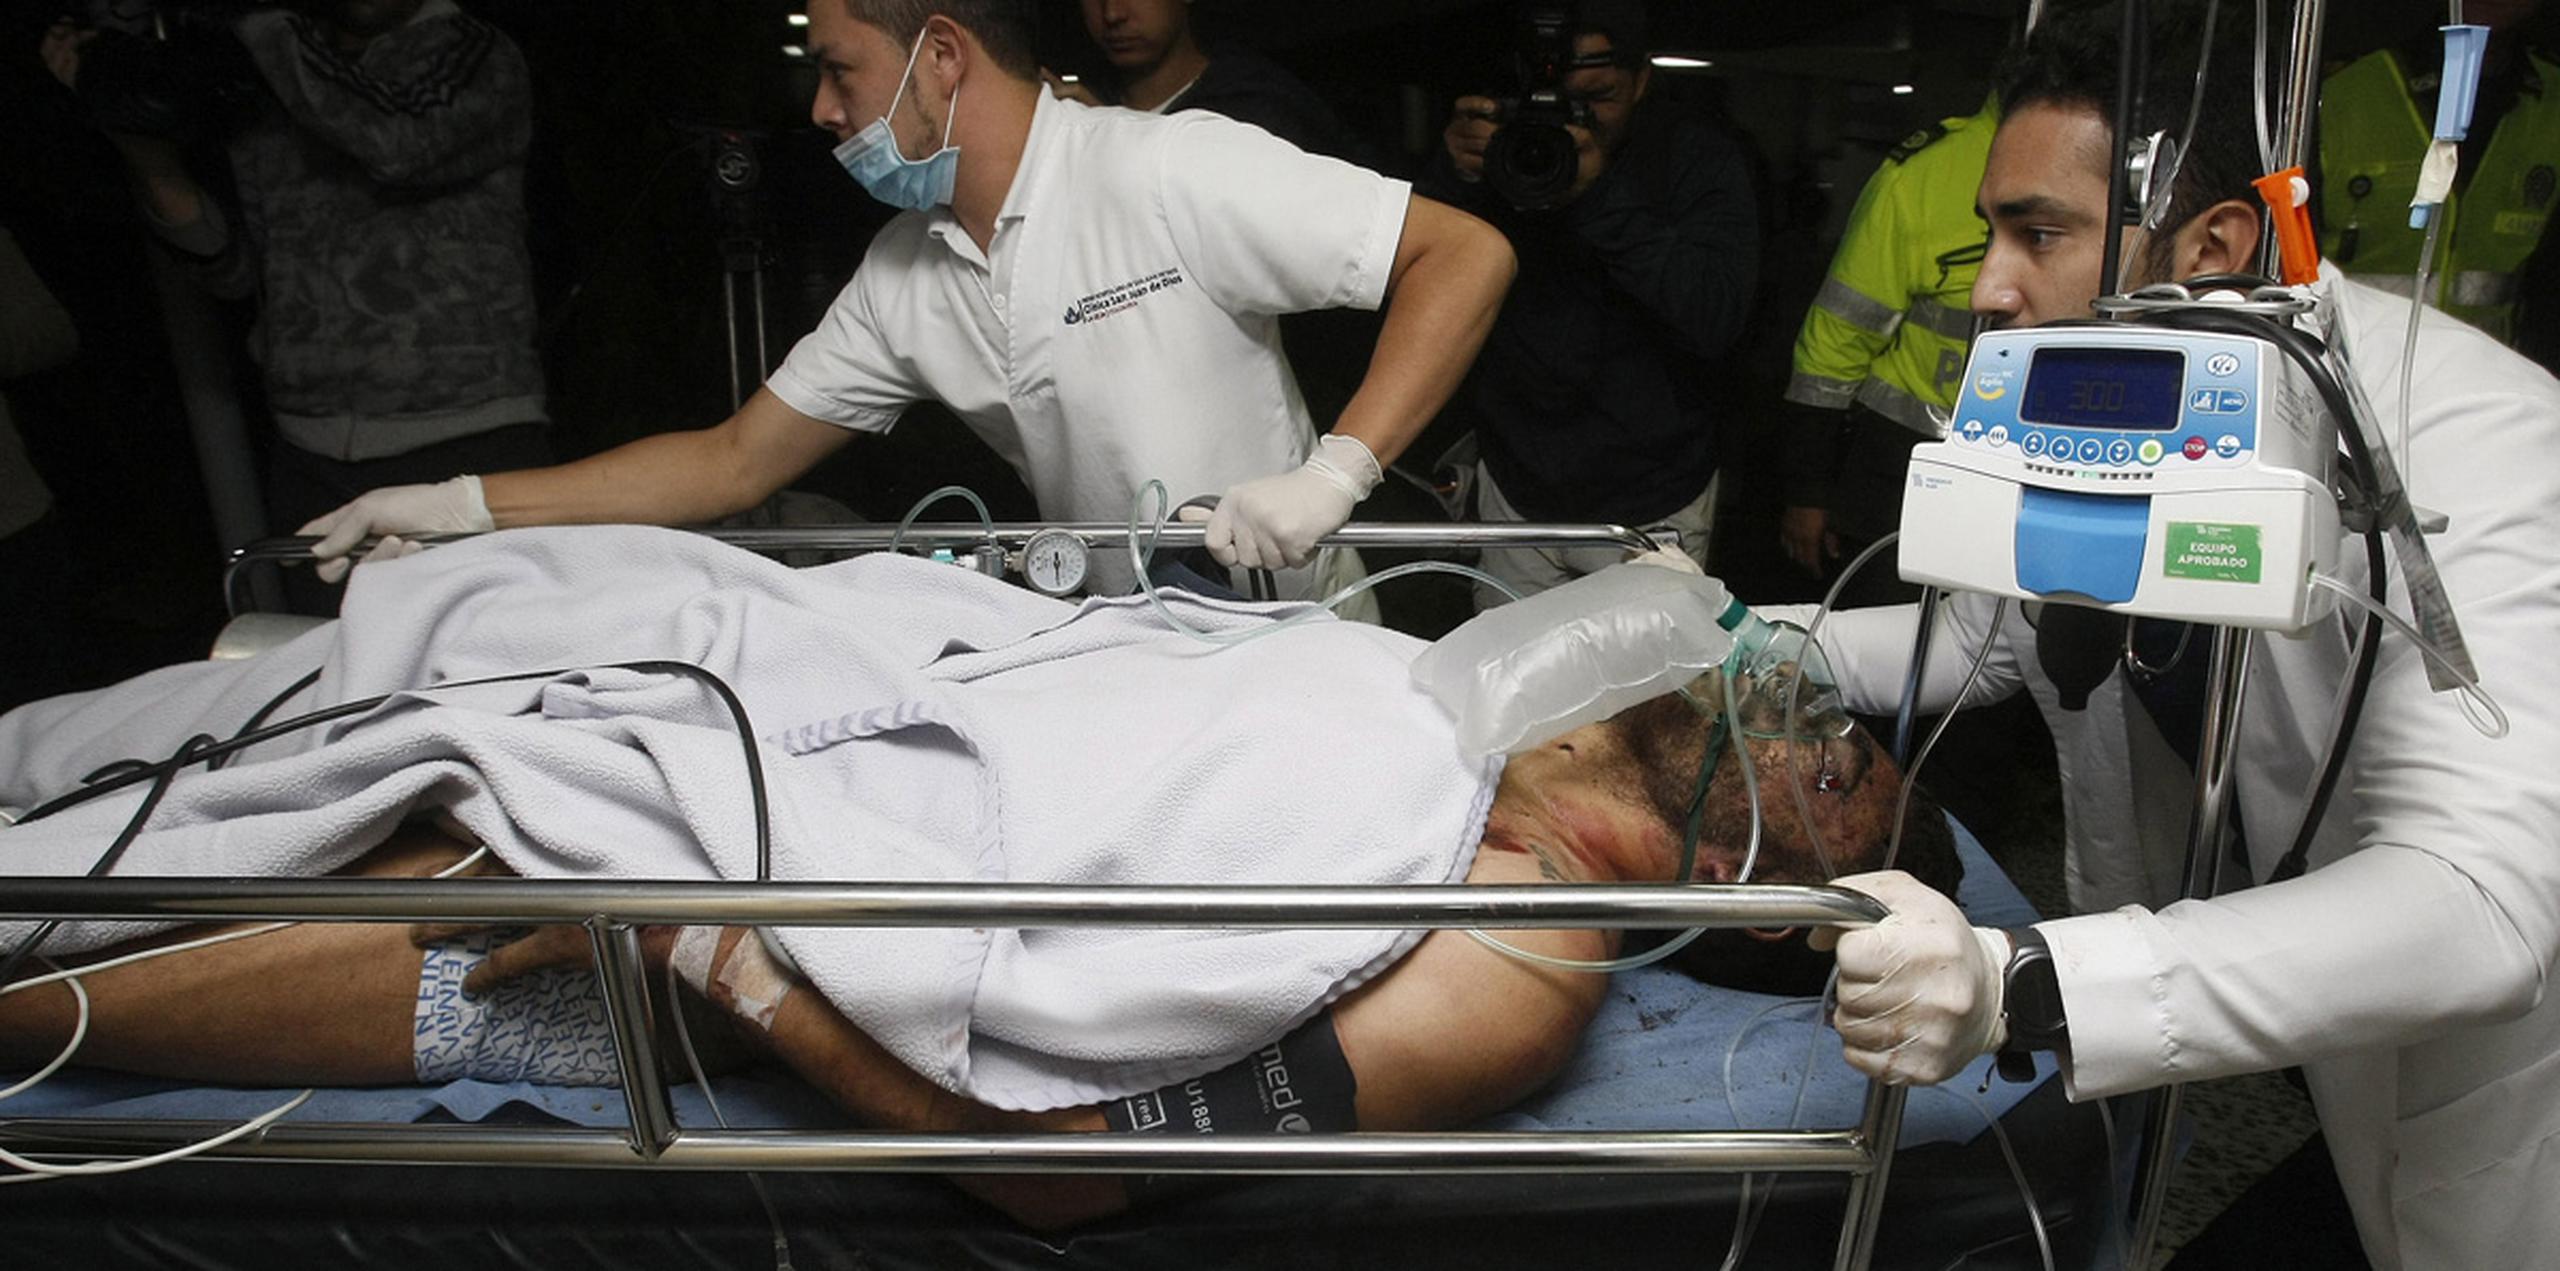 El futbolista brasileño Alan Ruschel es el primer superviviente del accidente del avión que transportaba al equipo de fútbol Chapecoense, que se estrelló anoche cuando se aproximaba al aeropuerto José María Córdoba de la ciudad colombiana de Medellín. (EFE)